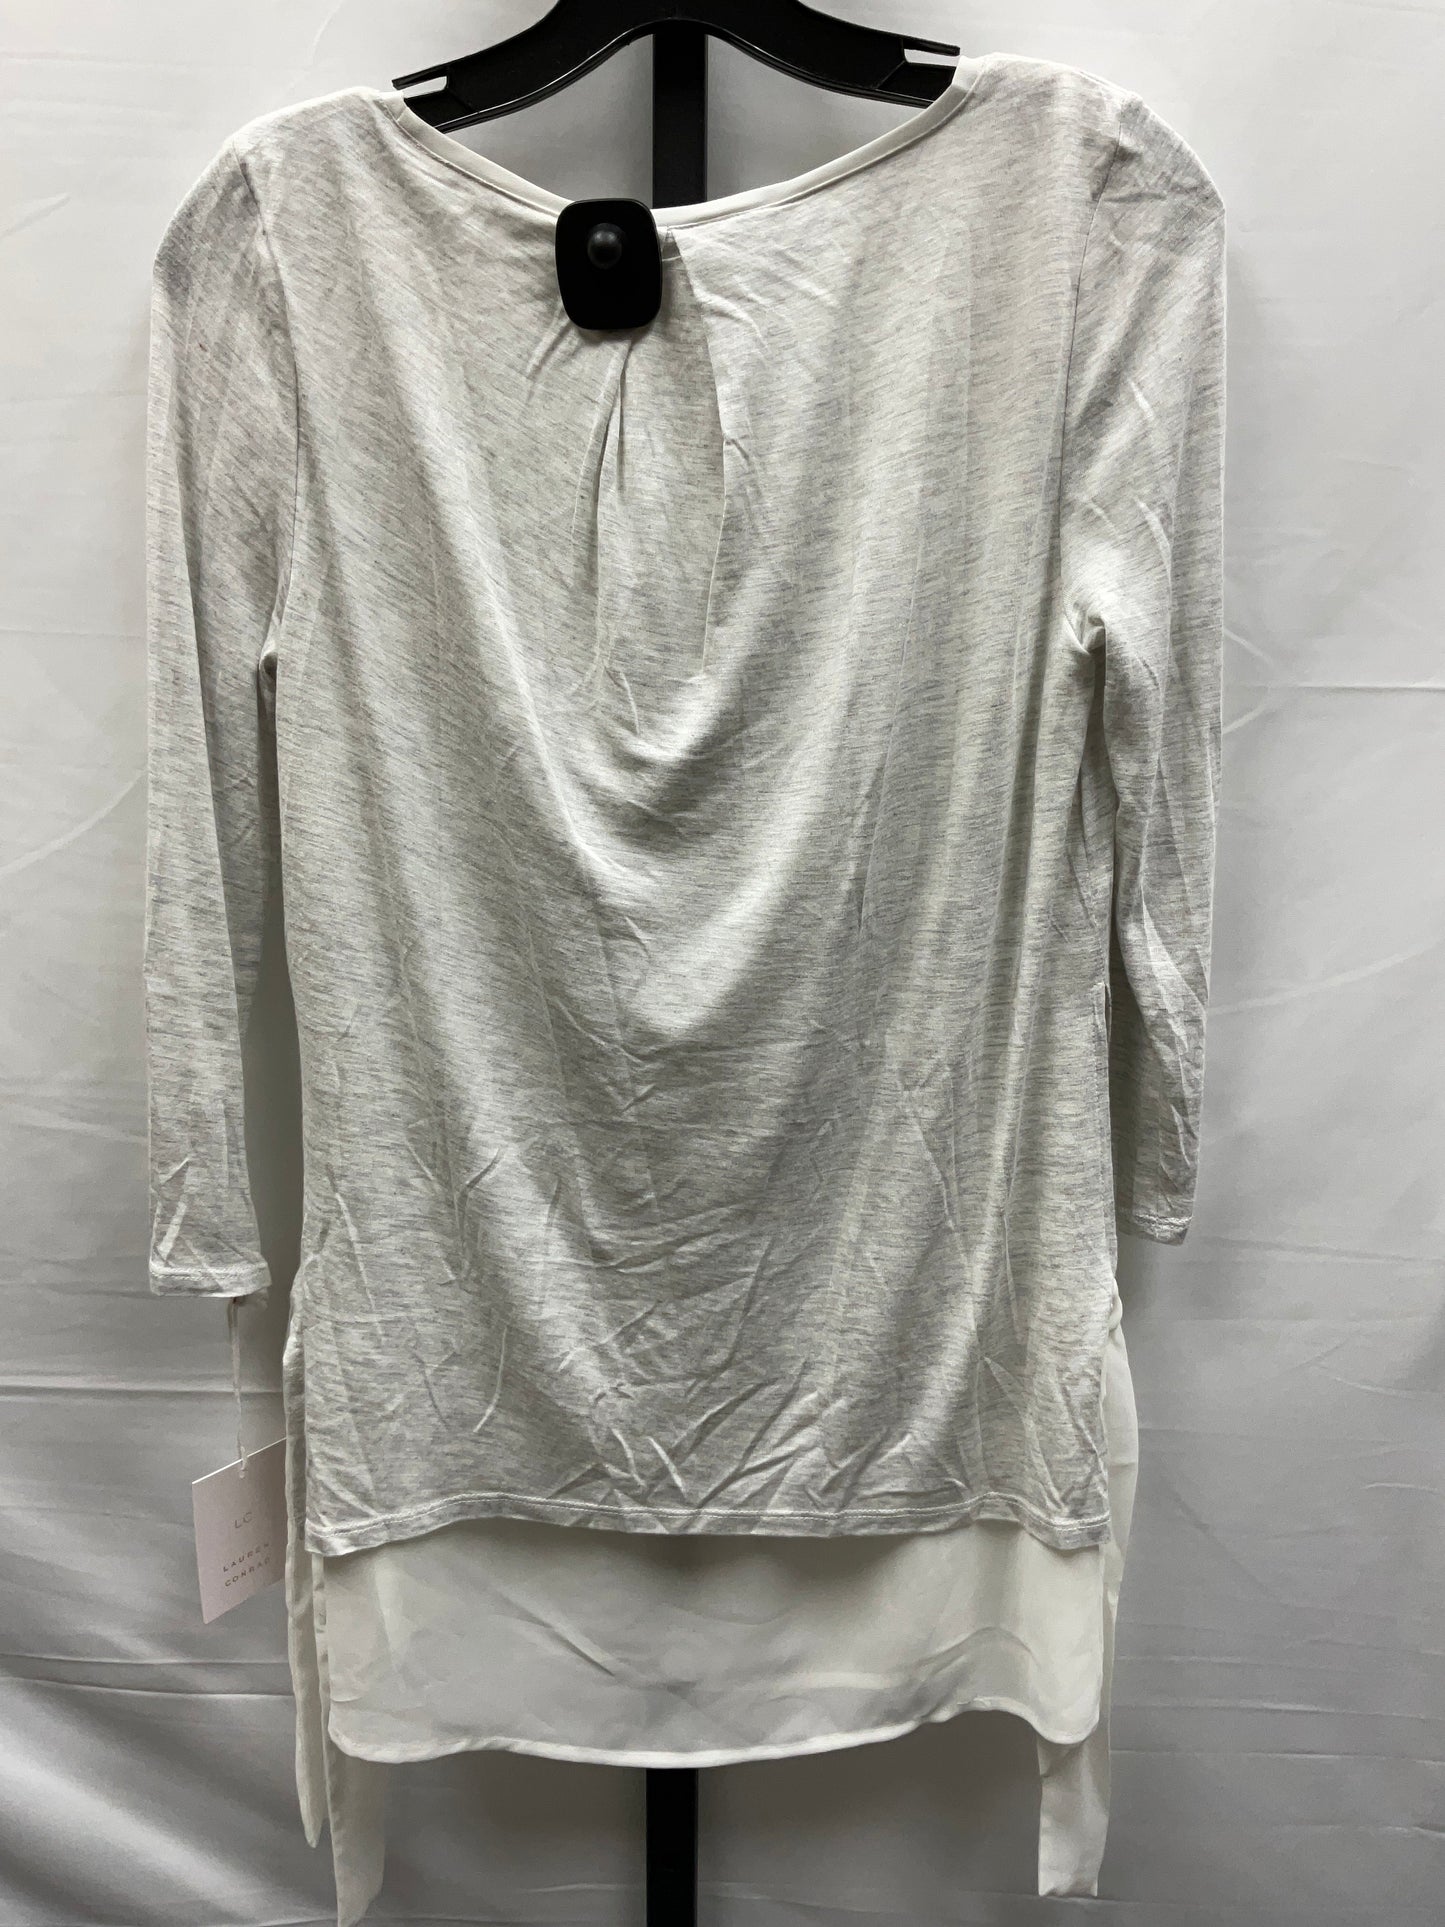 Grey Top Long Sleeve Lc Lauren Conrad, Size Xs